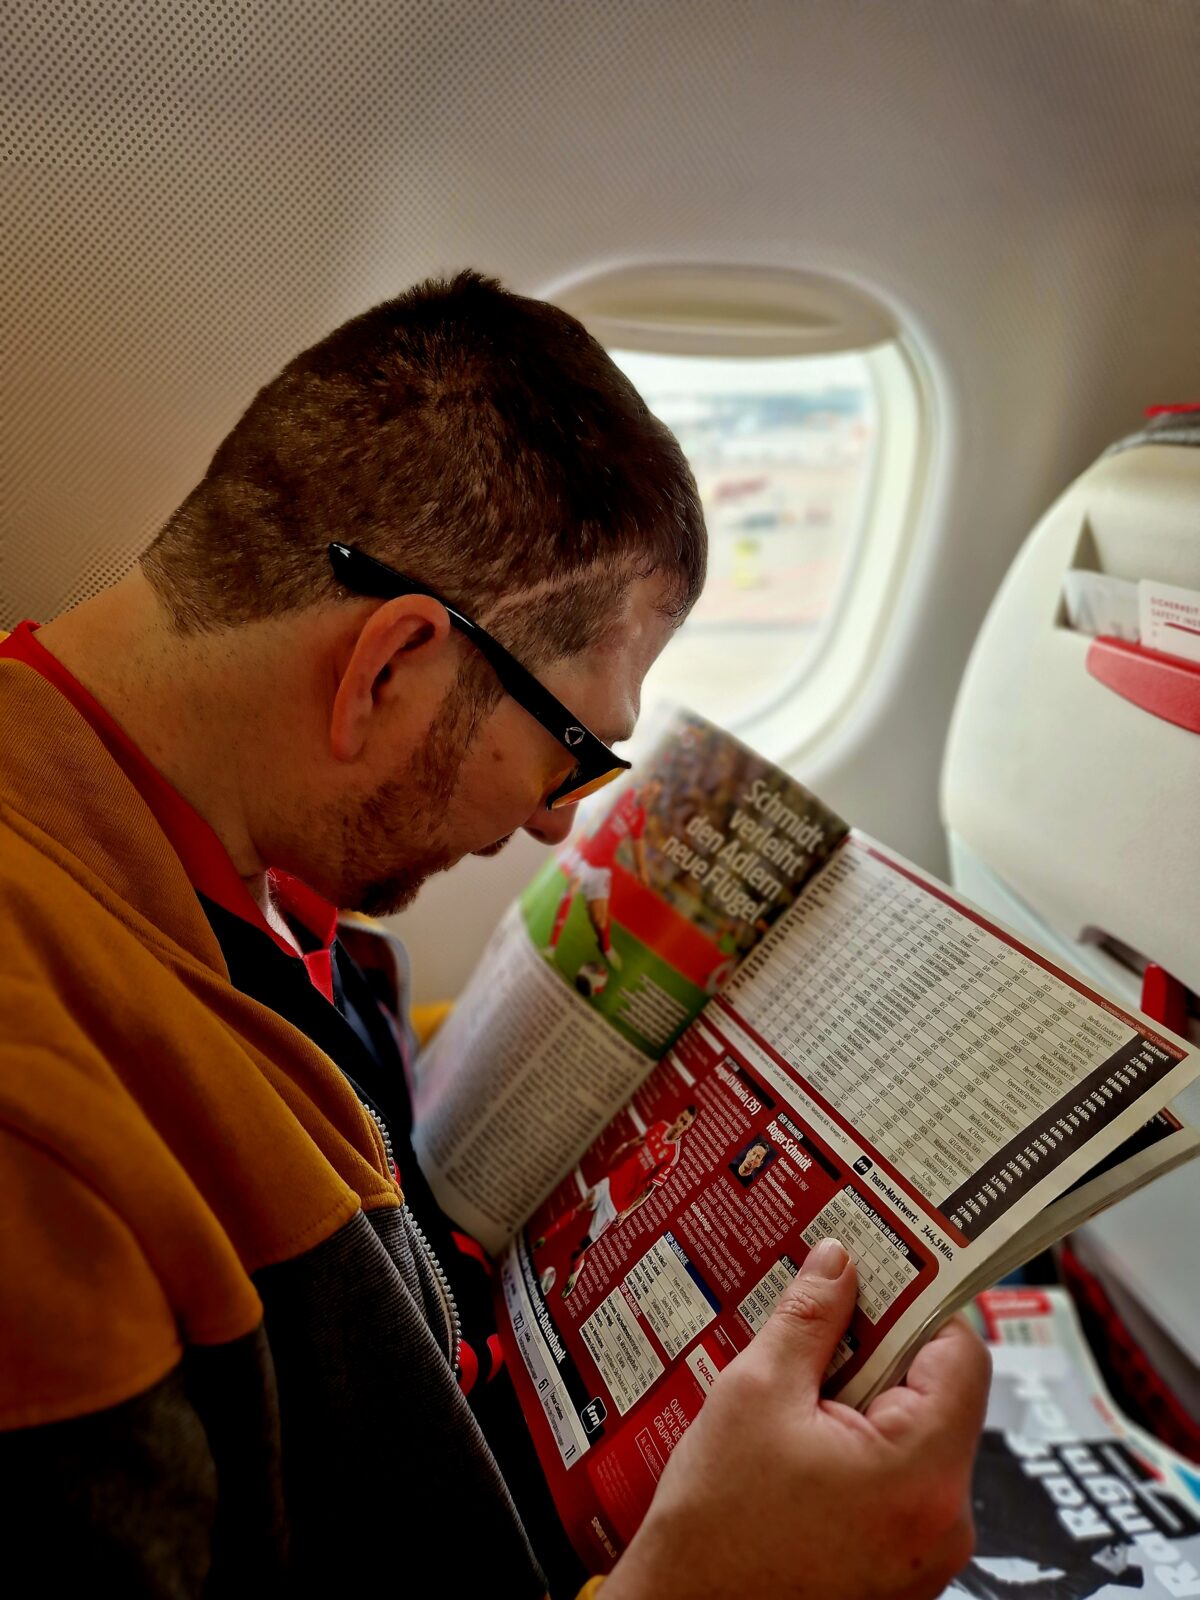 Mann liest Fußball-Zeitschrift, sitzt im Flugzeug